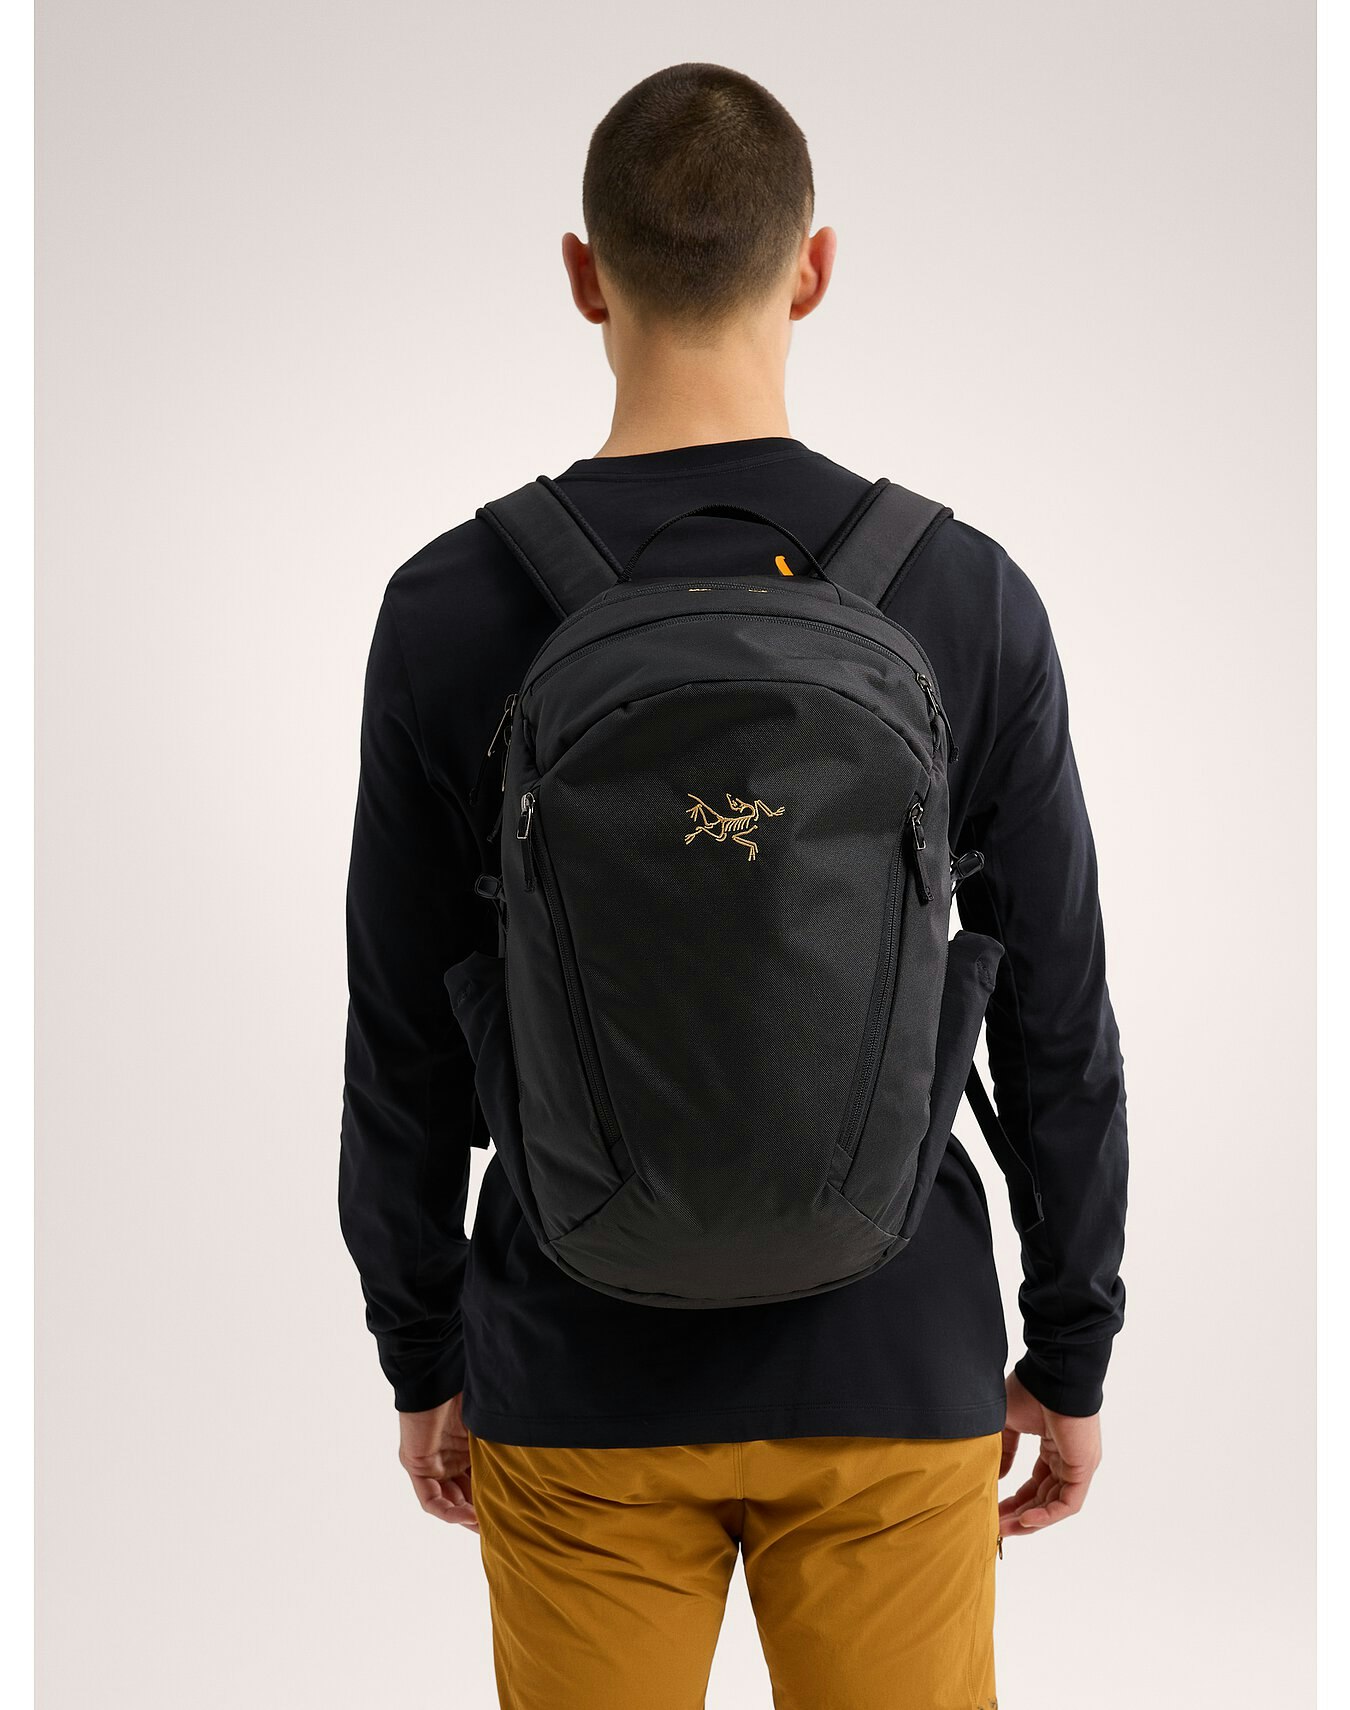 Mantis 26 Backpack Black